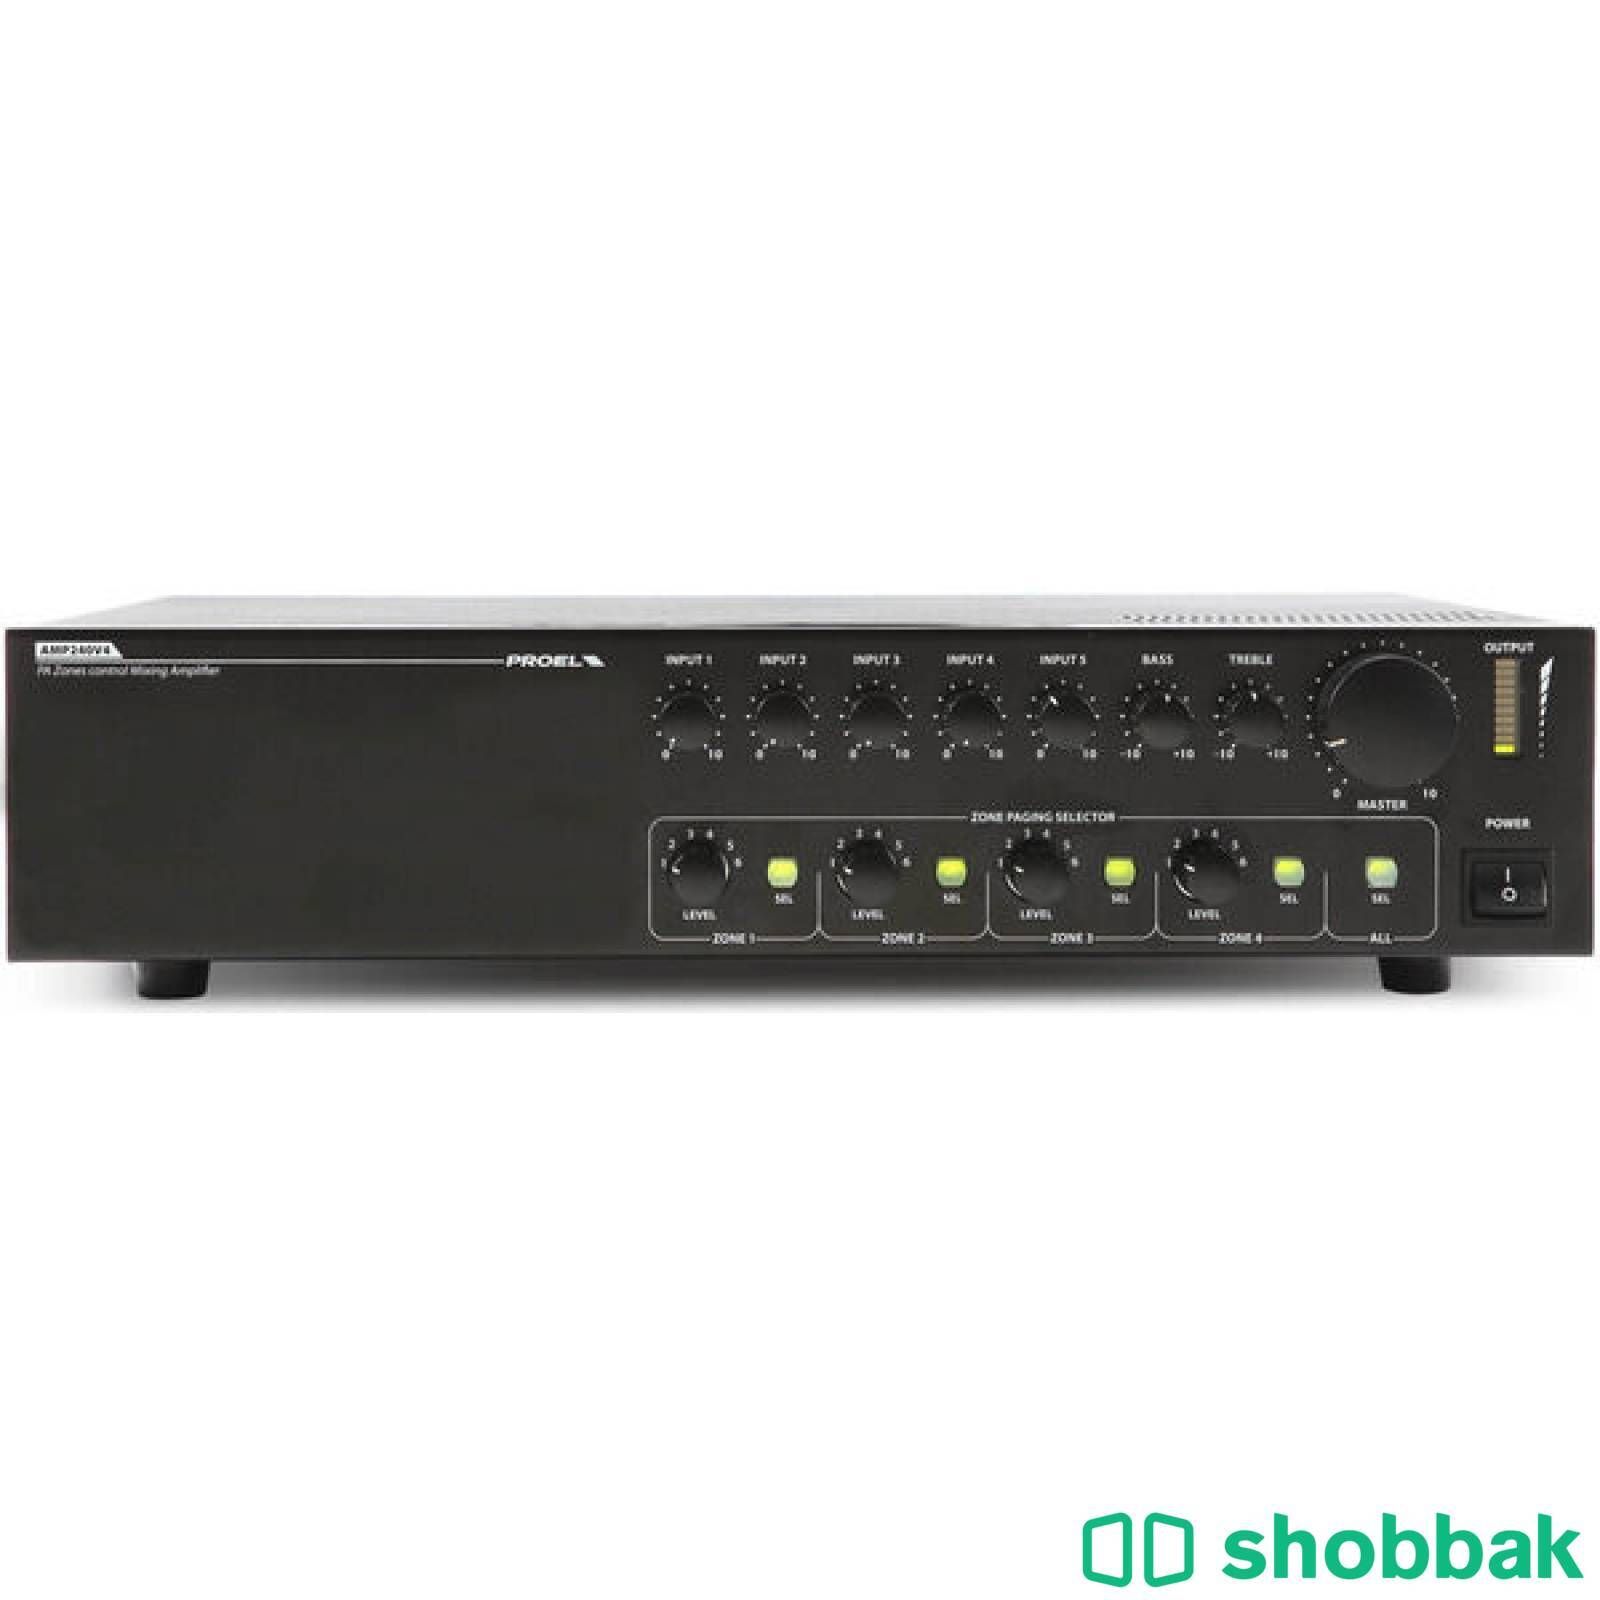 للبيع جهاز امبليفاير Amplifier جديد بكرتونه 4 زون Shobbak Saudi Arabia